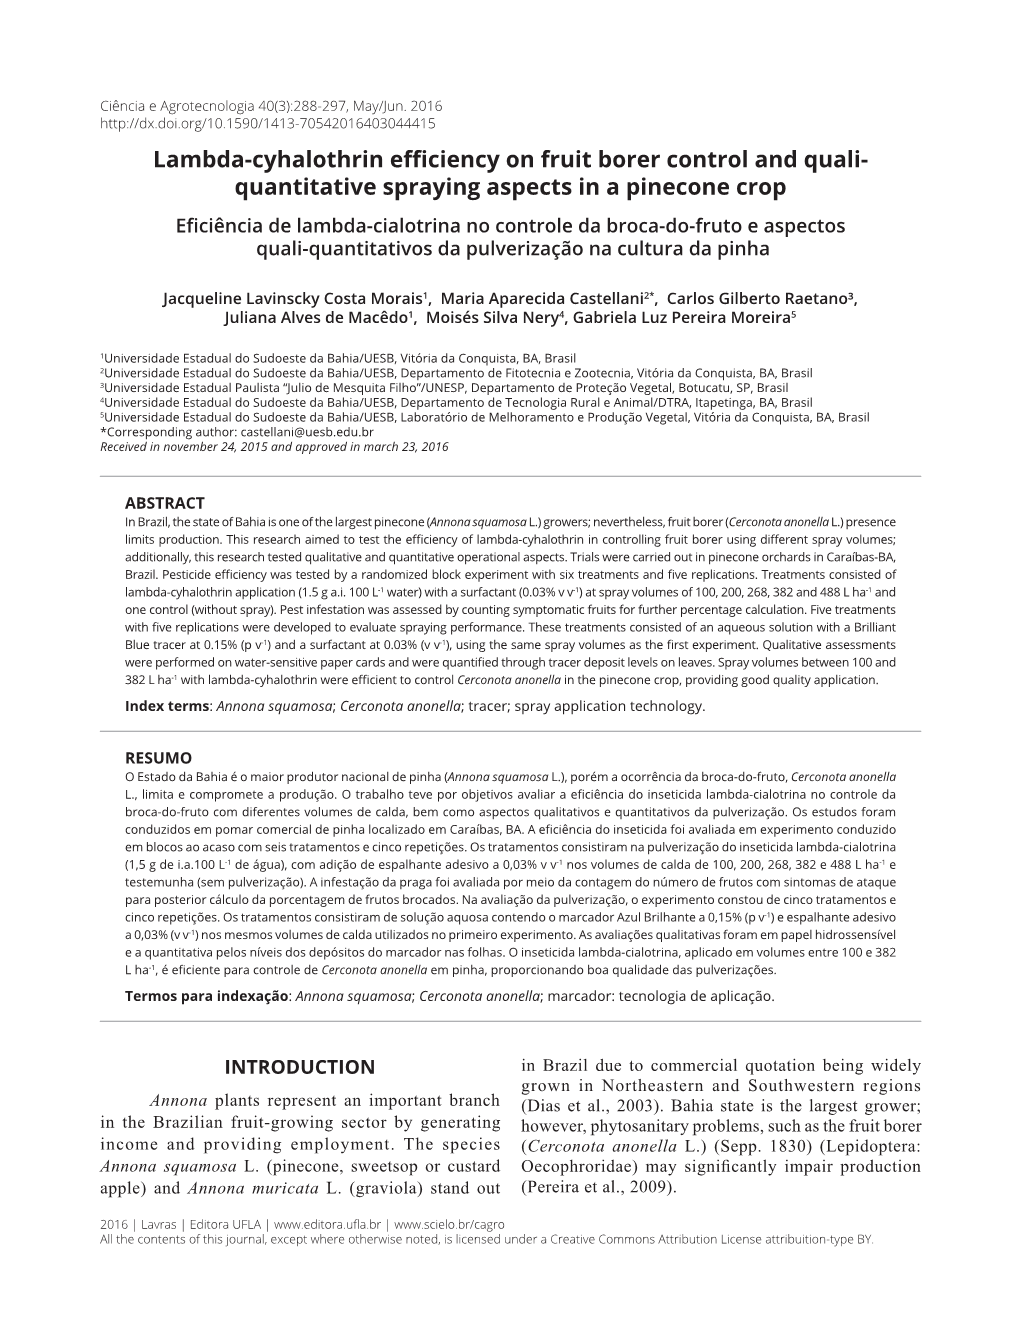 Lambda-Cyhalothrin Efficiency on Fruit Borer Control and Quali